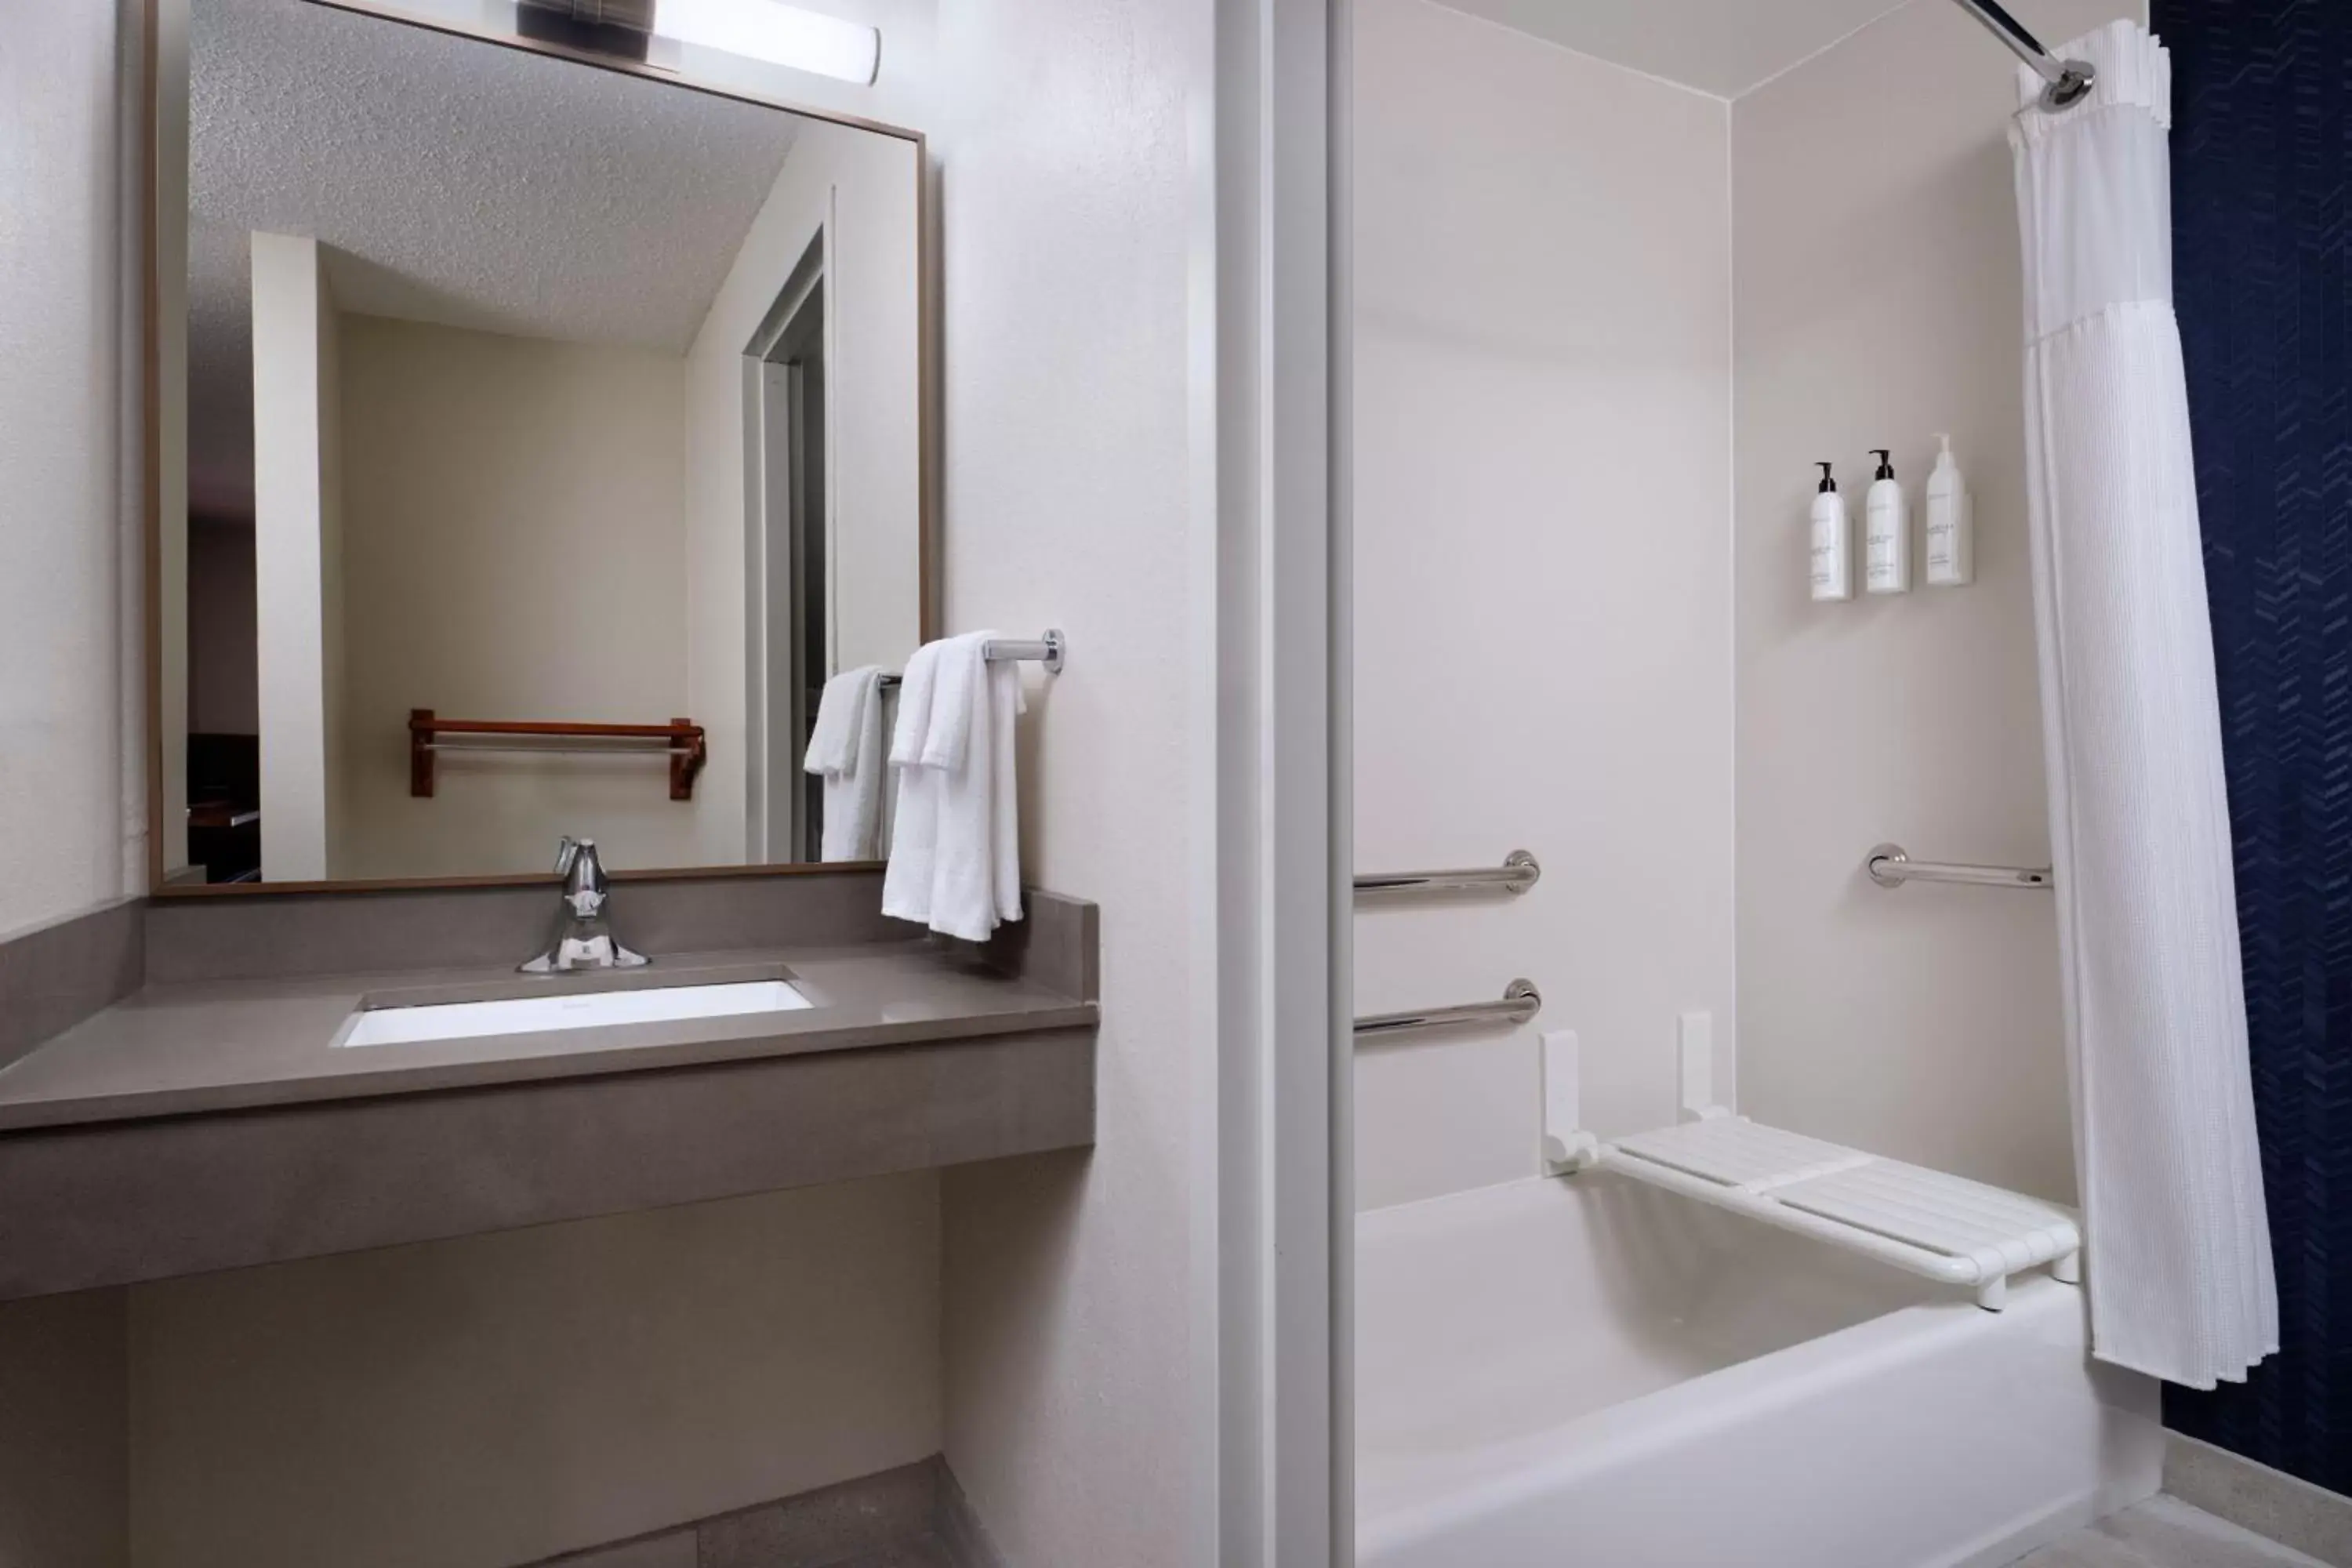 Bathroom in Fairfield Inn and Suites Austin South